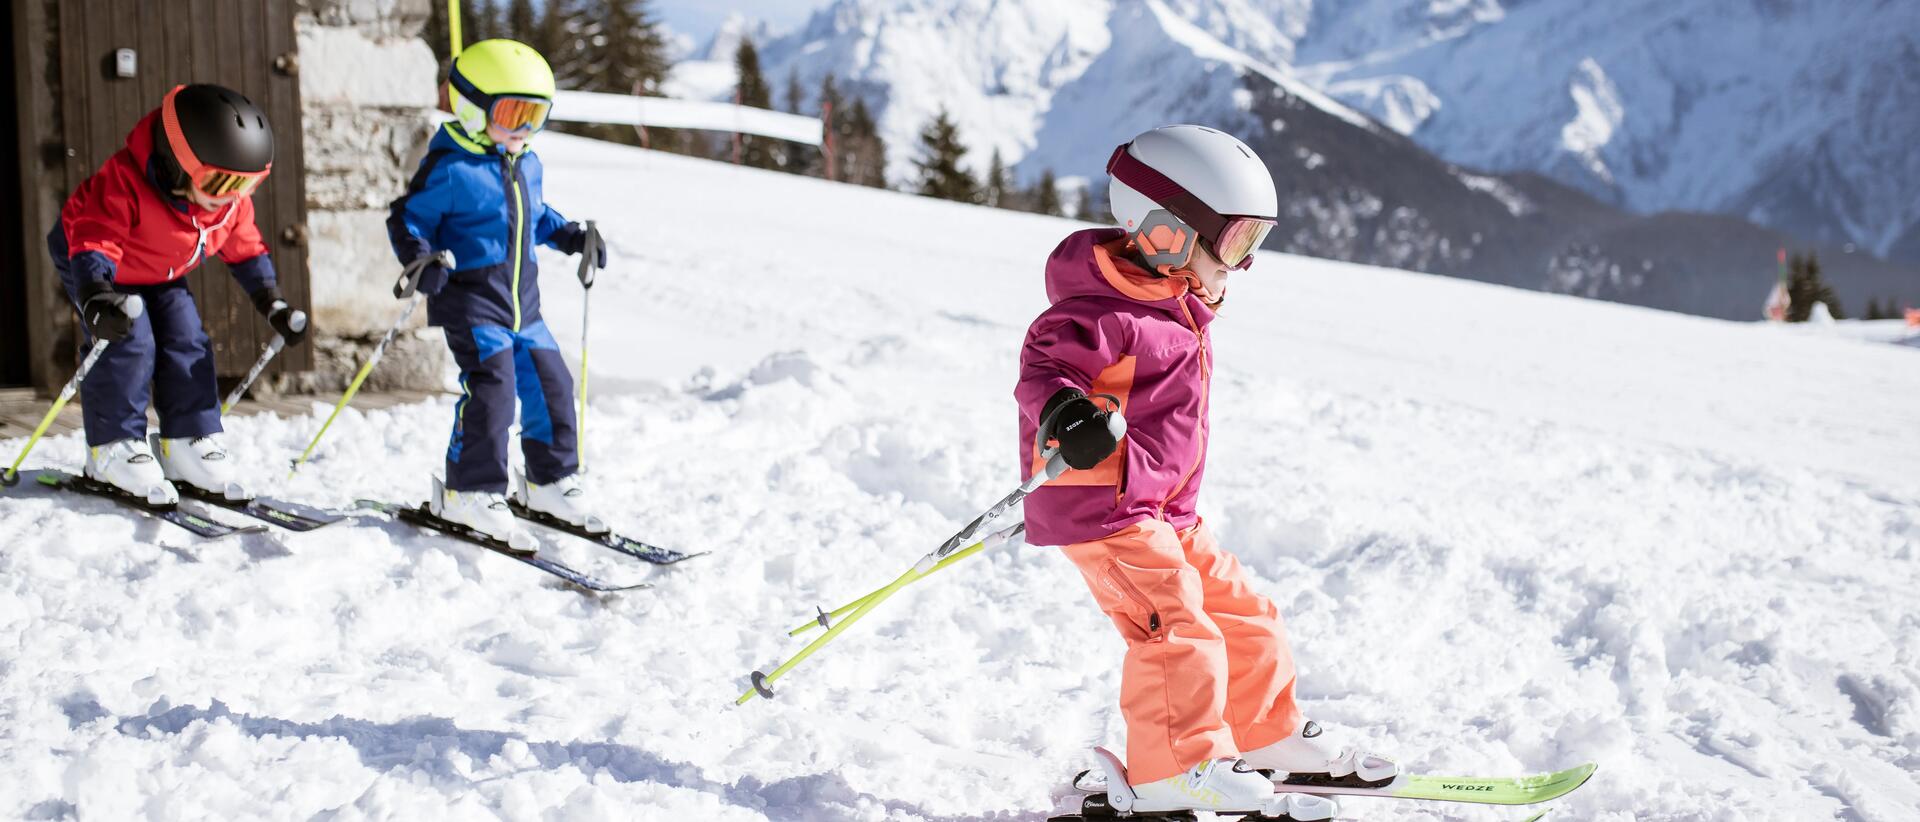 dzieci zjeżdżające na nartach